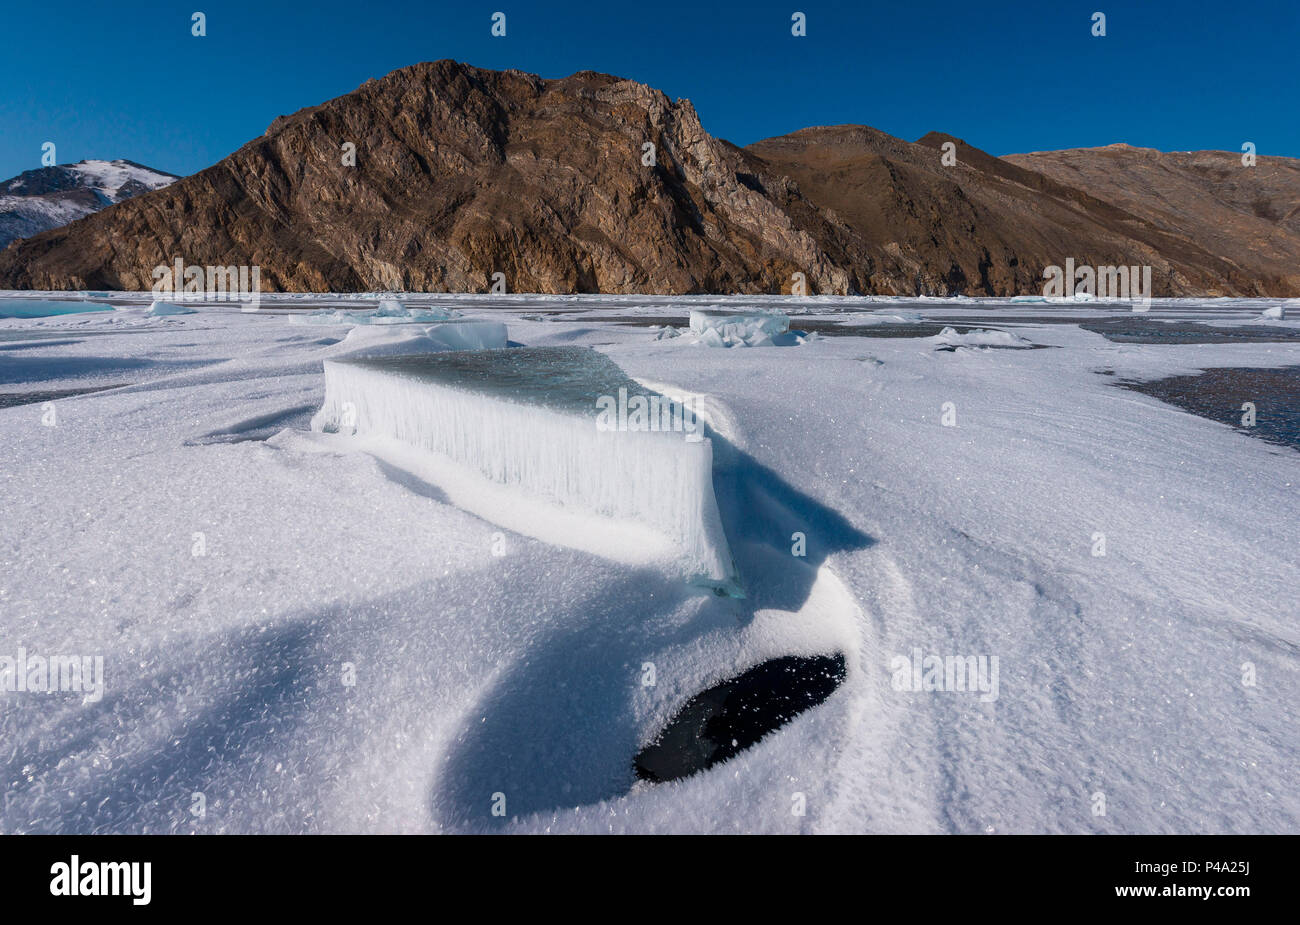 Bloc de glace sur le Lac Baïkal et l'île Olhon, région d'Irkoutsk, en Sibérie, Russie Banque D'Images